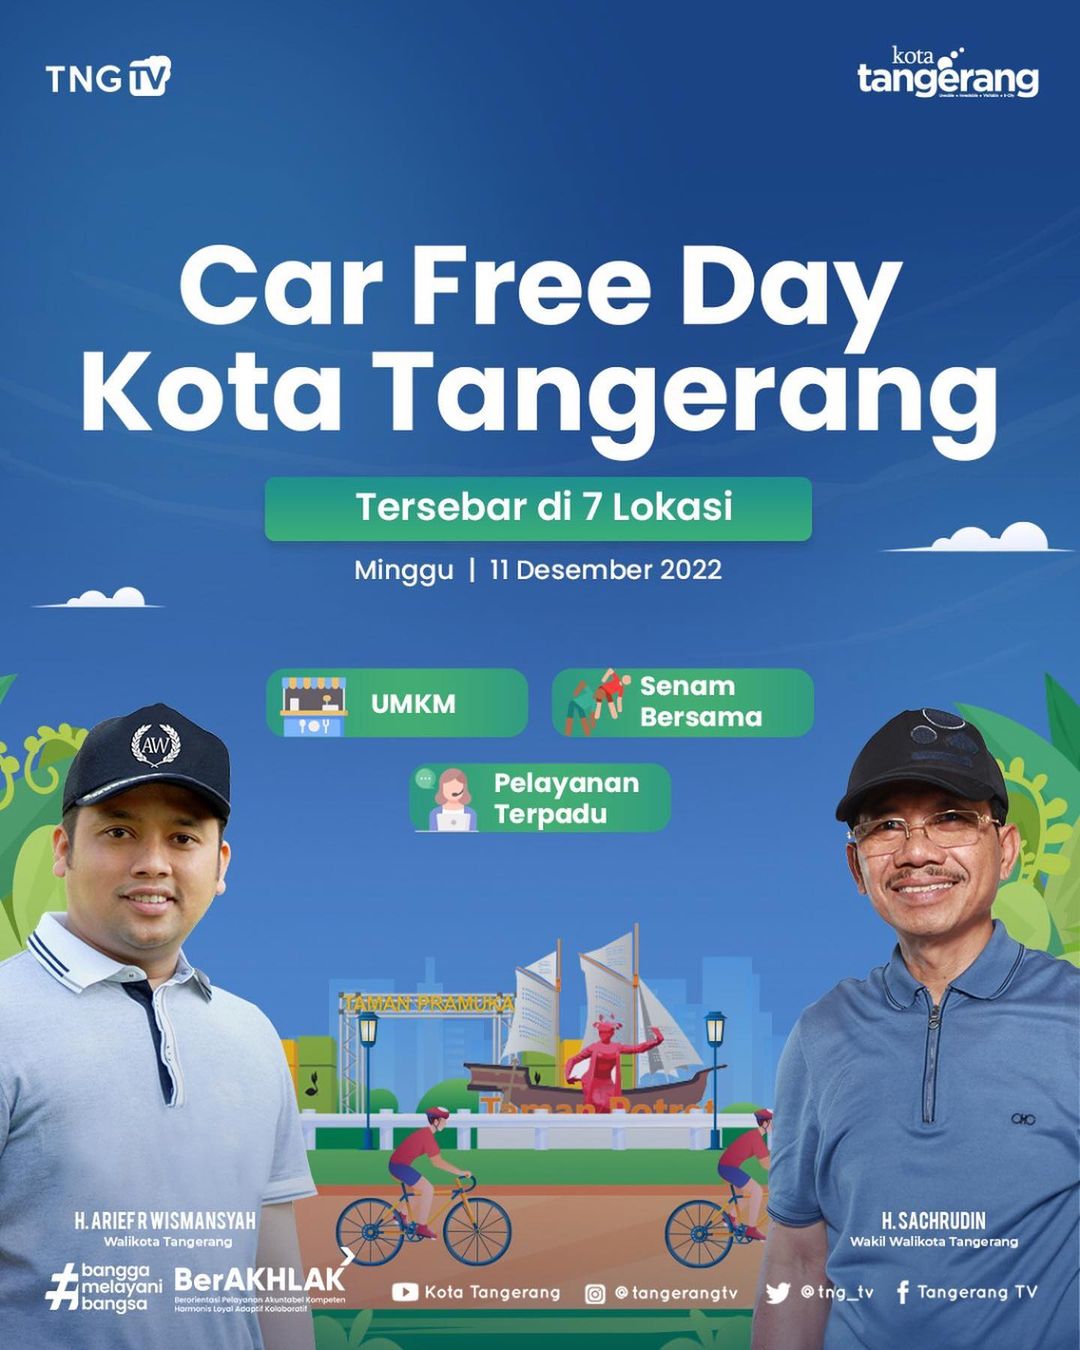 IMG-car-free-day-kota-tangerang